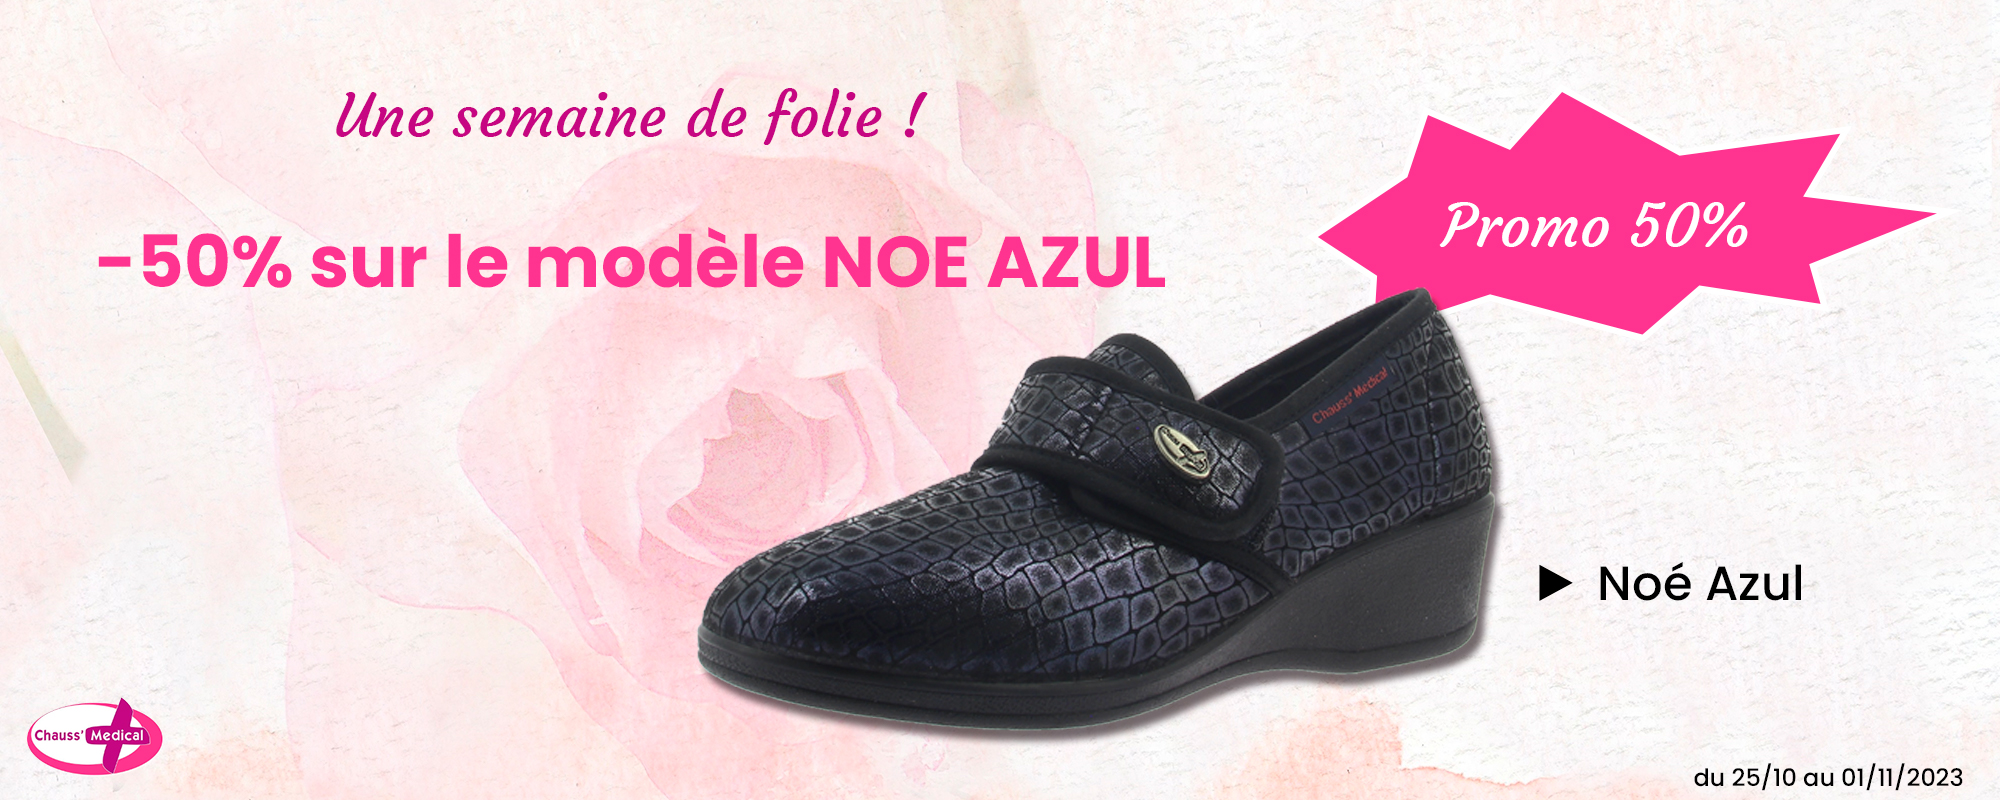 Promotion 50% sur les chaussures chaussons NOE AZUL, confort et style en mode économique